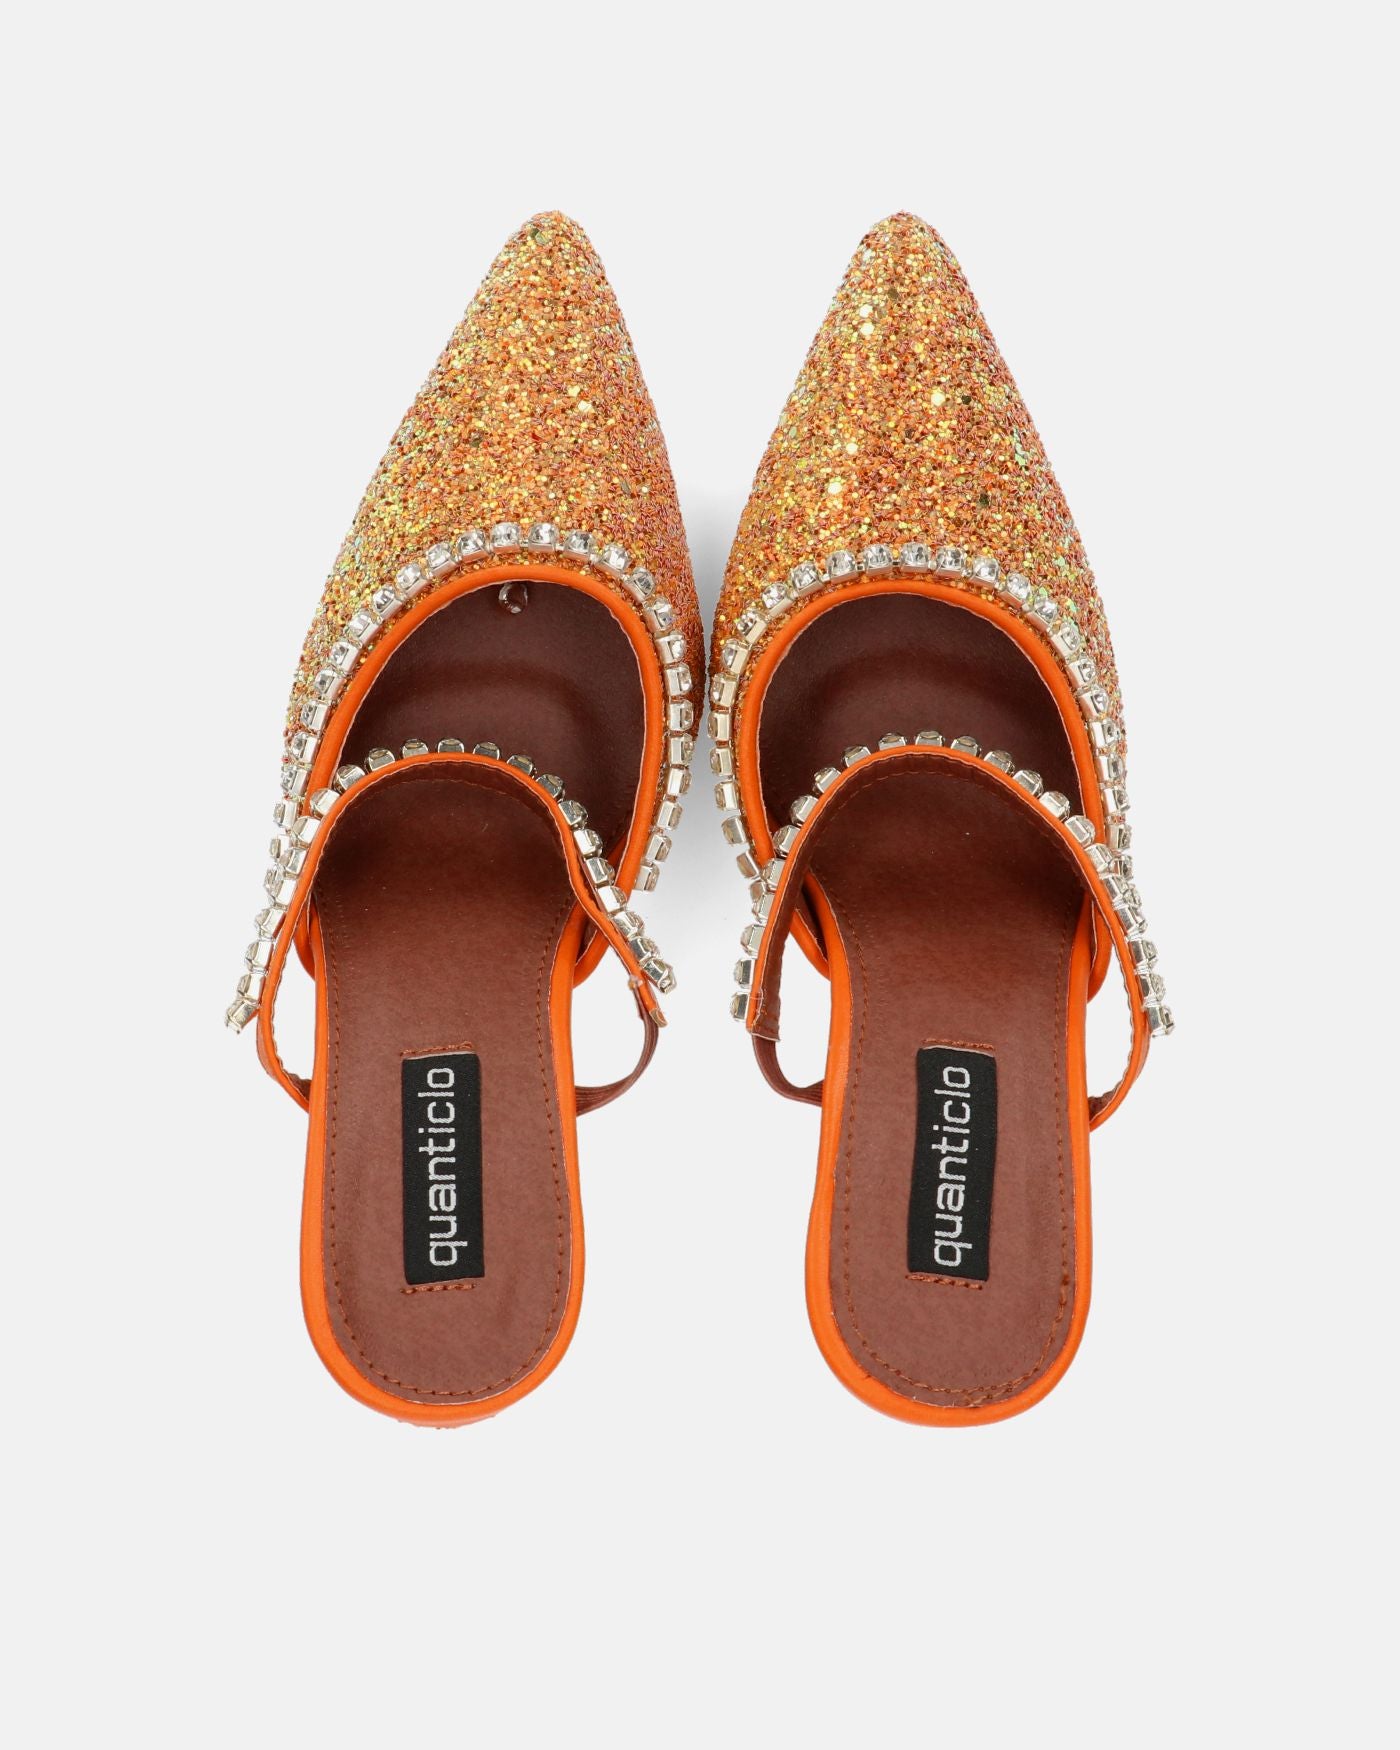 PERAL - chaussure à talon en glitter orange avec pierres précieuses